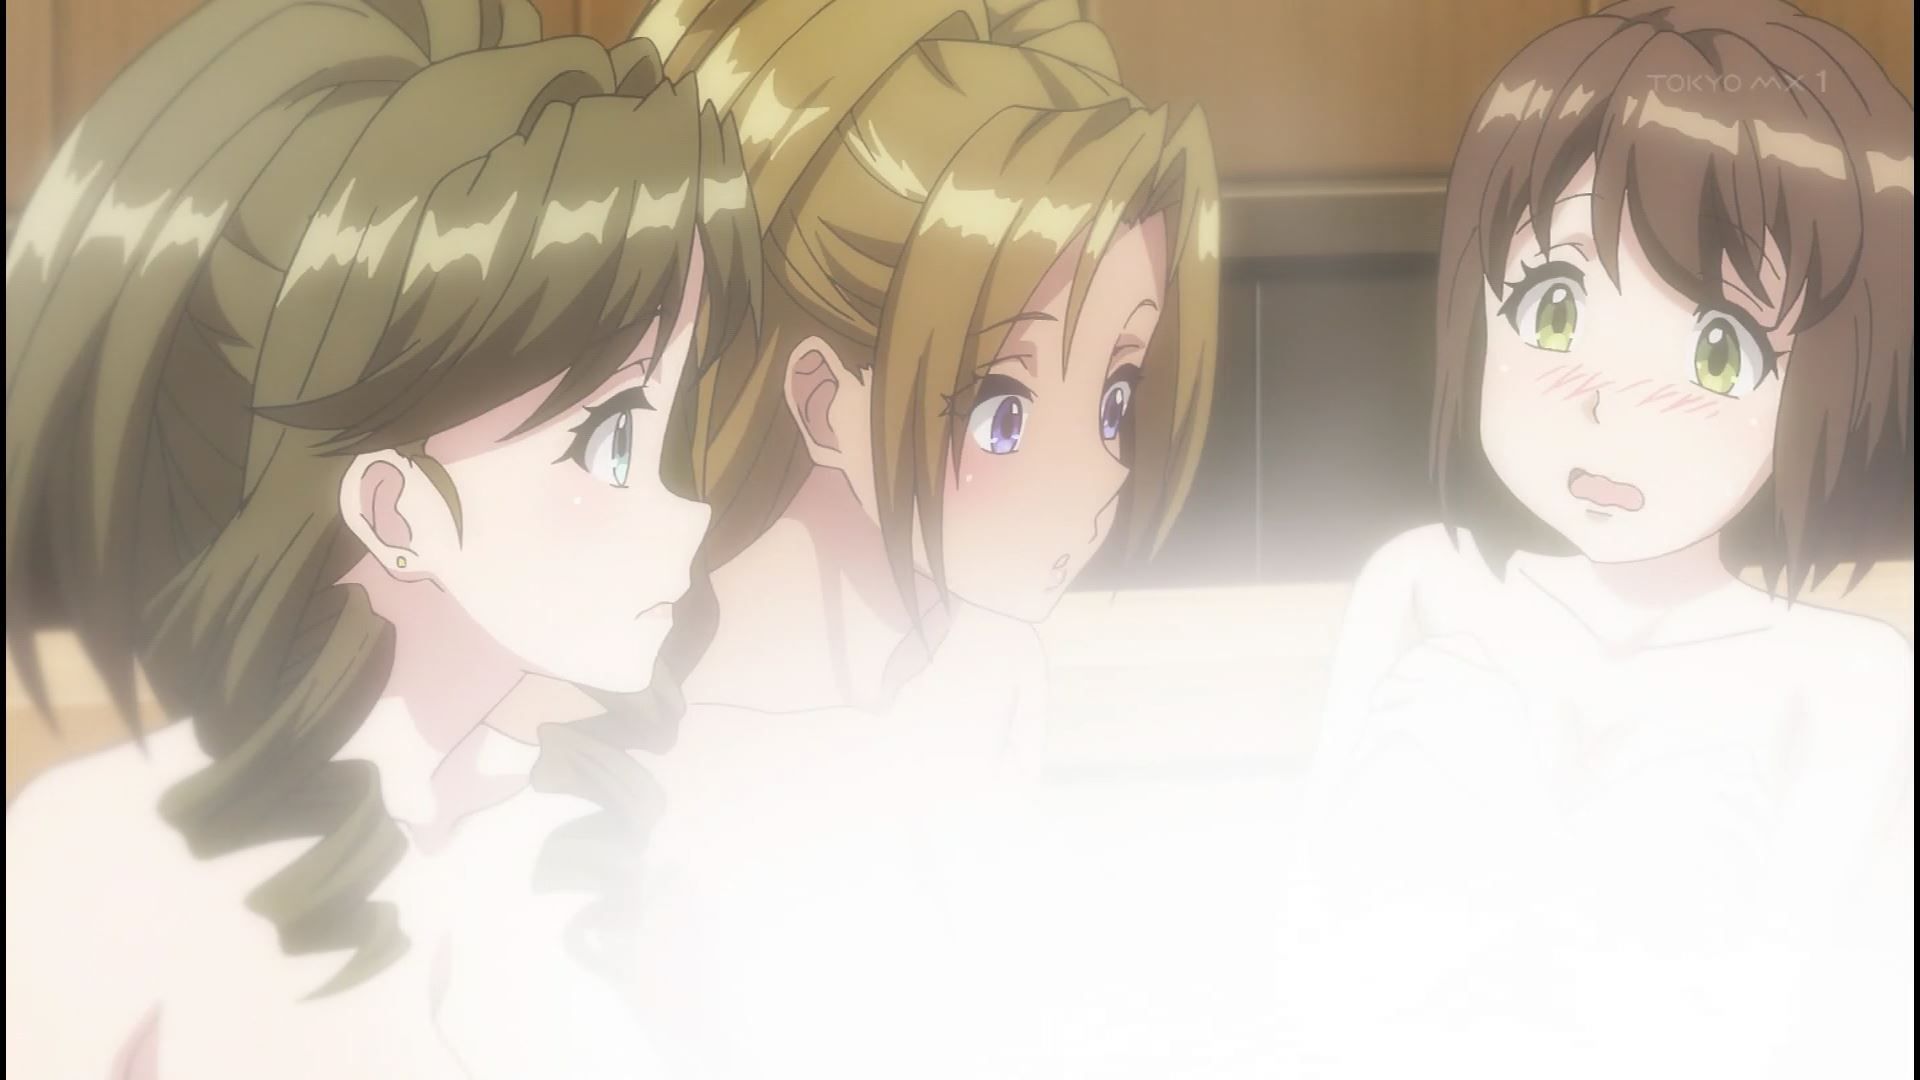 Anime [Kandagawa JETGIRLS] 8 episodes of girls erotic round-view bath bathing scene! 18